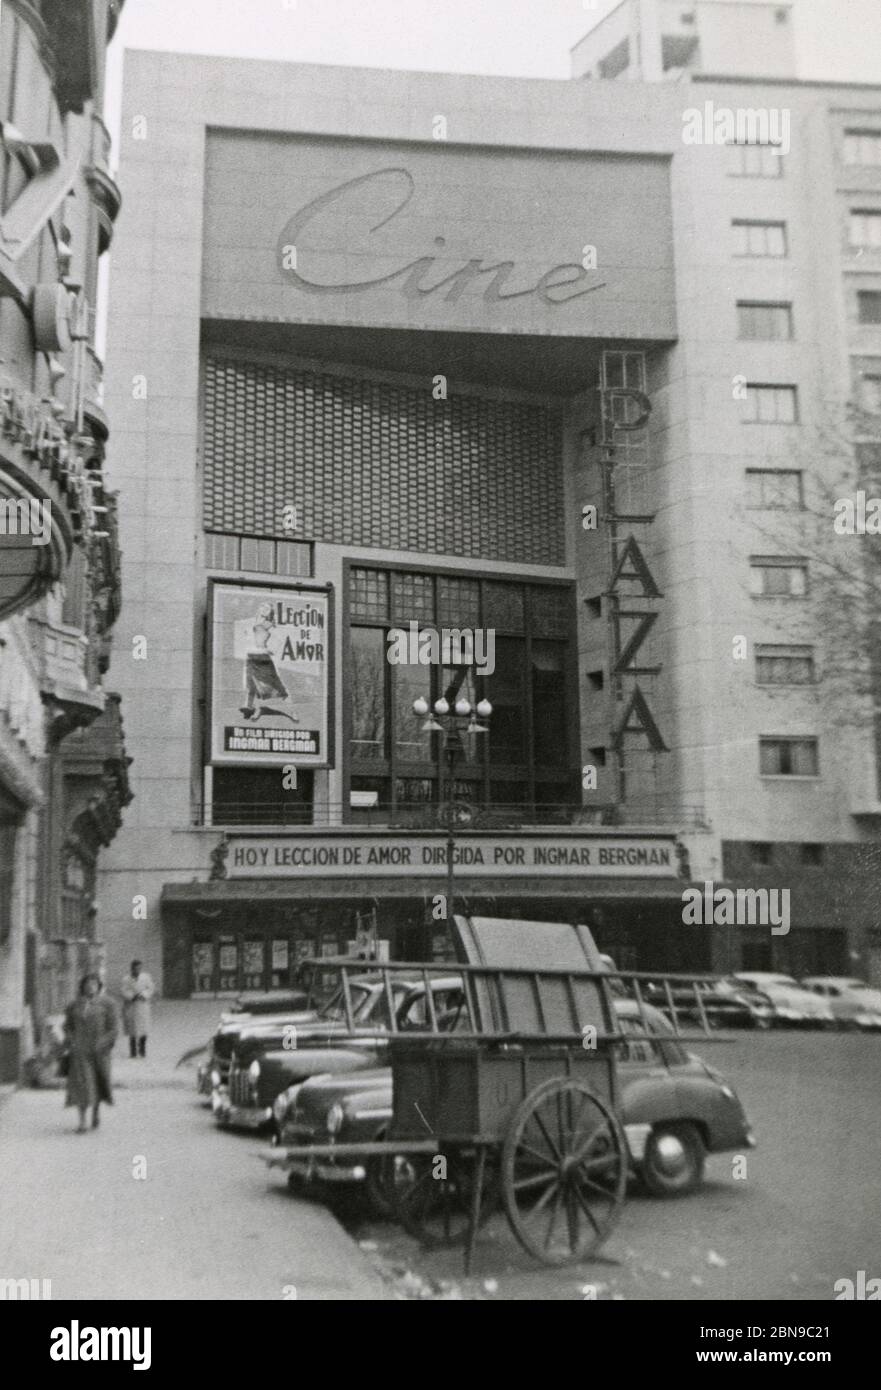 Photographie d'époque, cinéma Plaza à Montevideo, Uruguay, le 5 juillet 1955. Avec affiche et marquise pour Ingmar Bergman’s A Lesson in Love (una lección de amor). Pris par un passager qui a débarqué d'un bateau de croisière. SOURCE : PHOTO ORIGINALE Banque D'Images